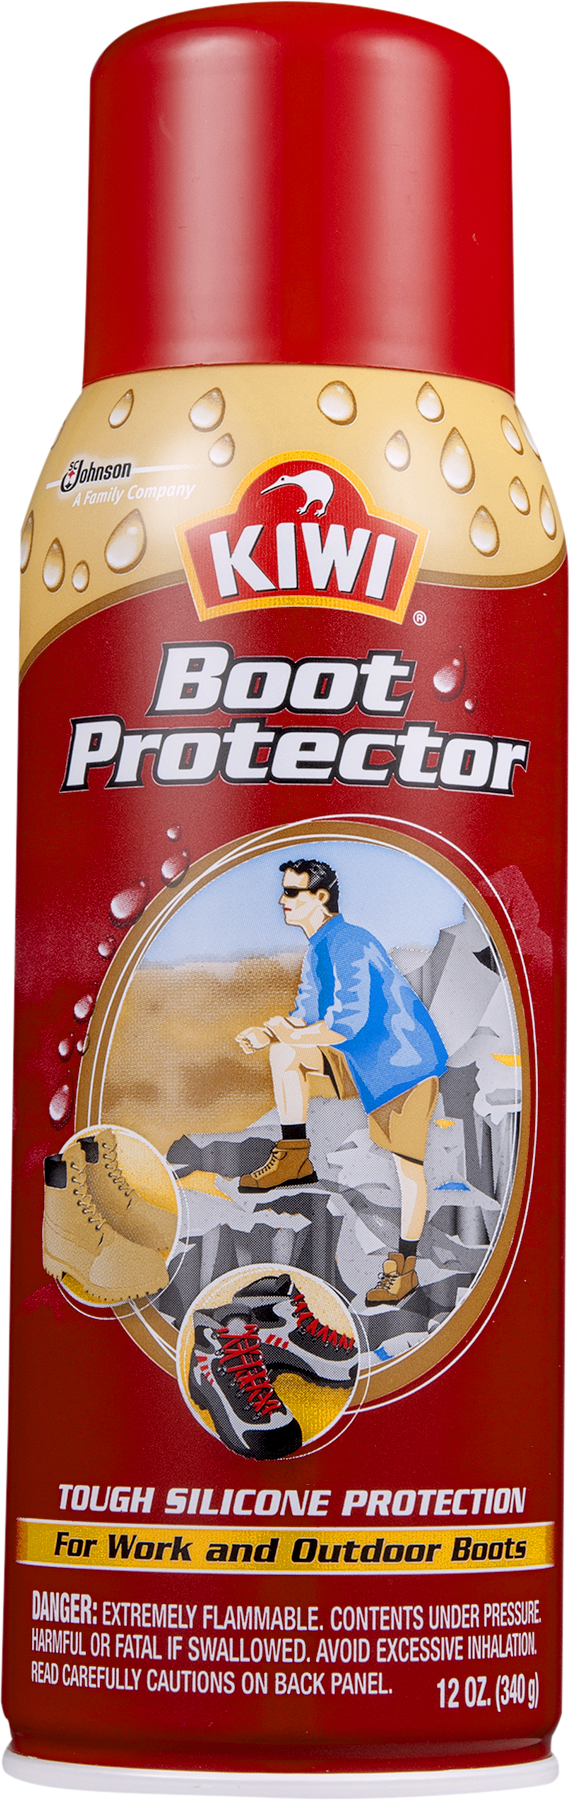 KIWI Boot Protector 12 oz - image 3 of 8